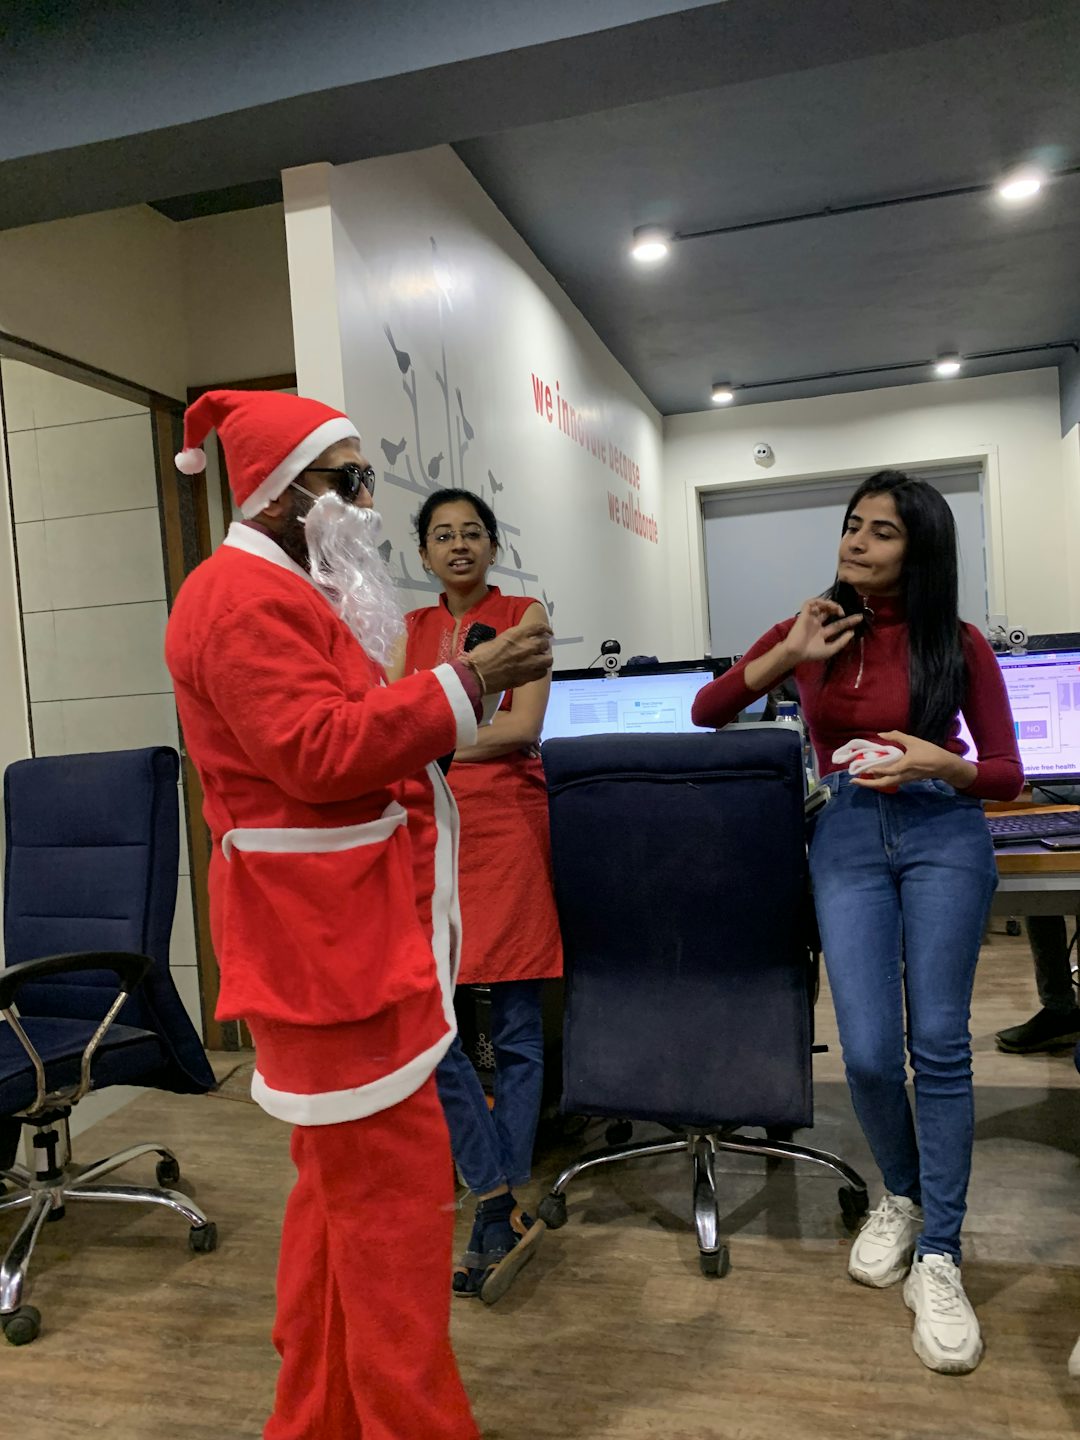 Santa exchanging gifts